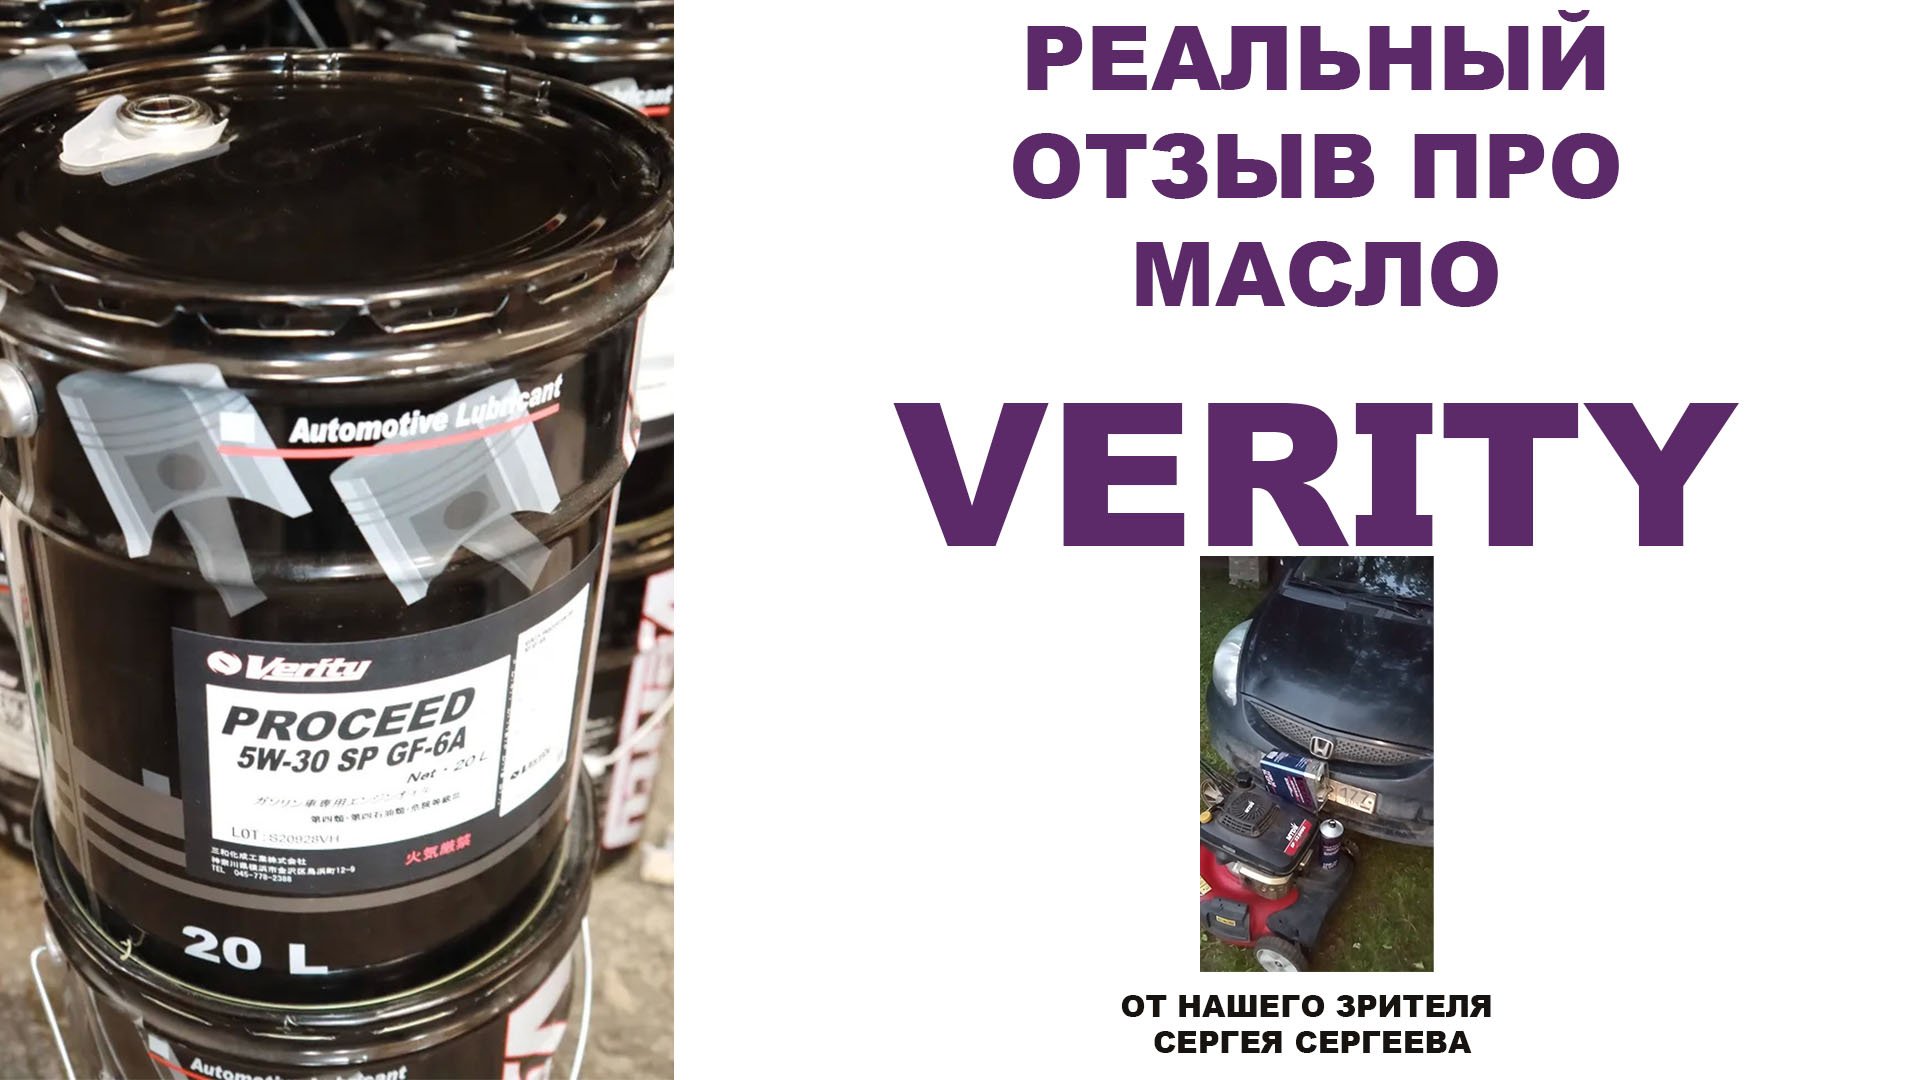 Реальный отзыв про моторное масло VERITY от нашего зрителя Сергея Сергеева